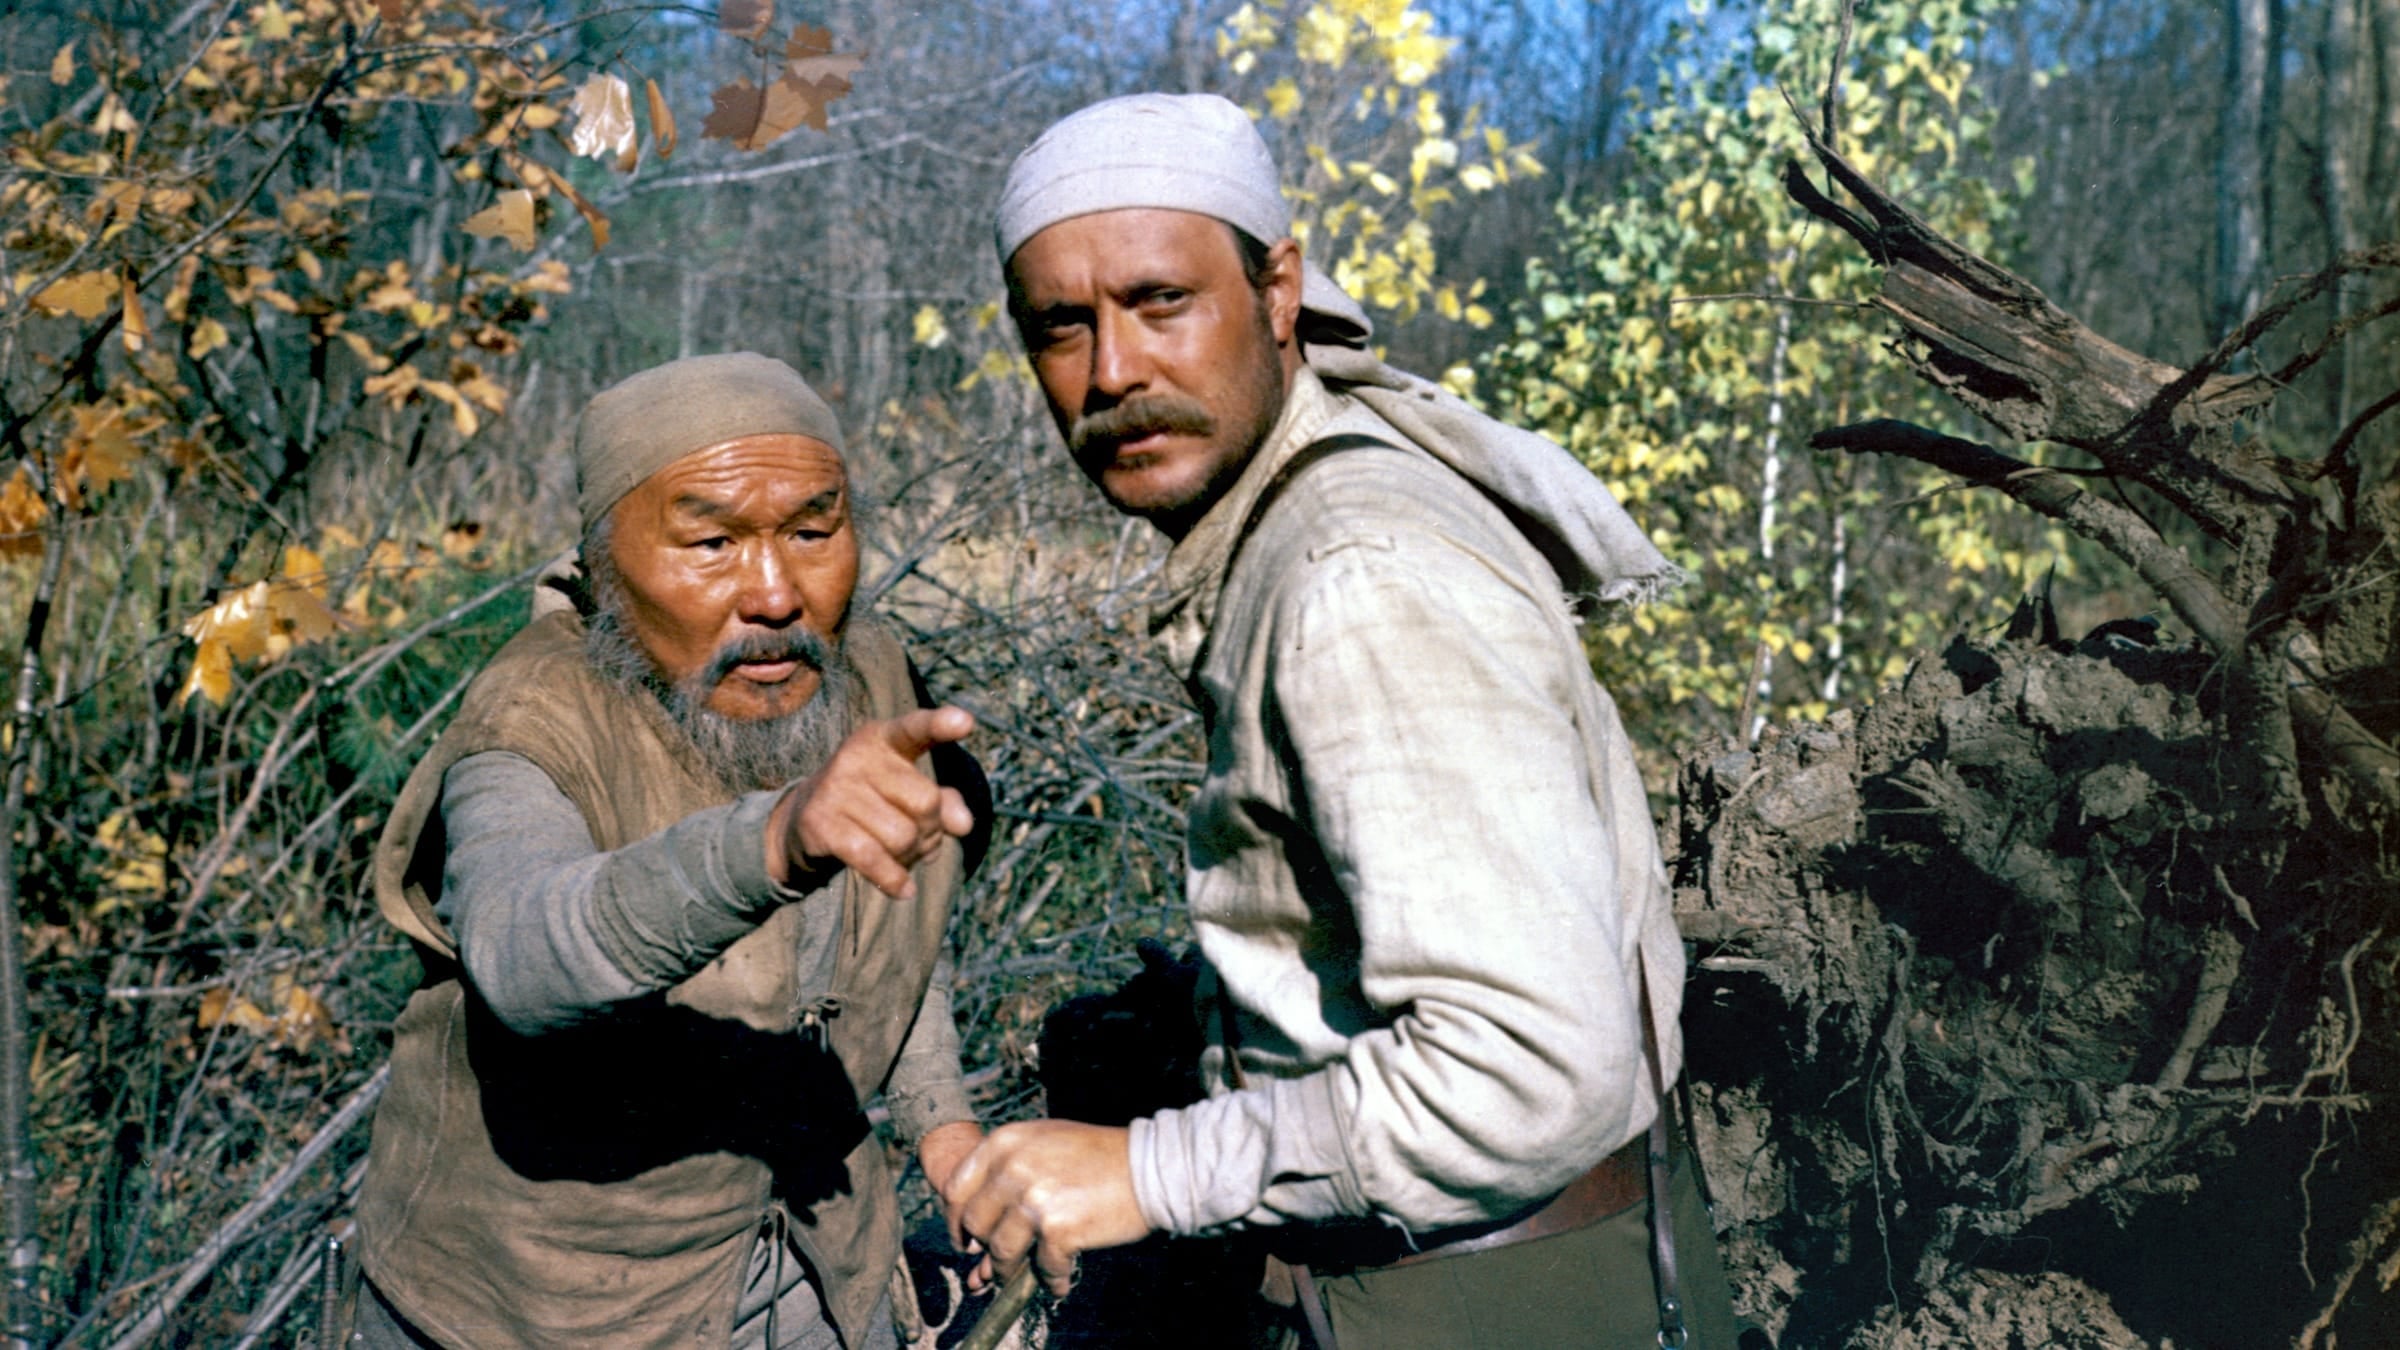 Dersu Uzala (El cazador) (1975)